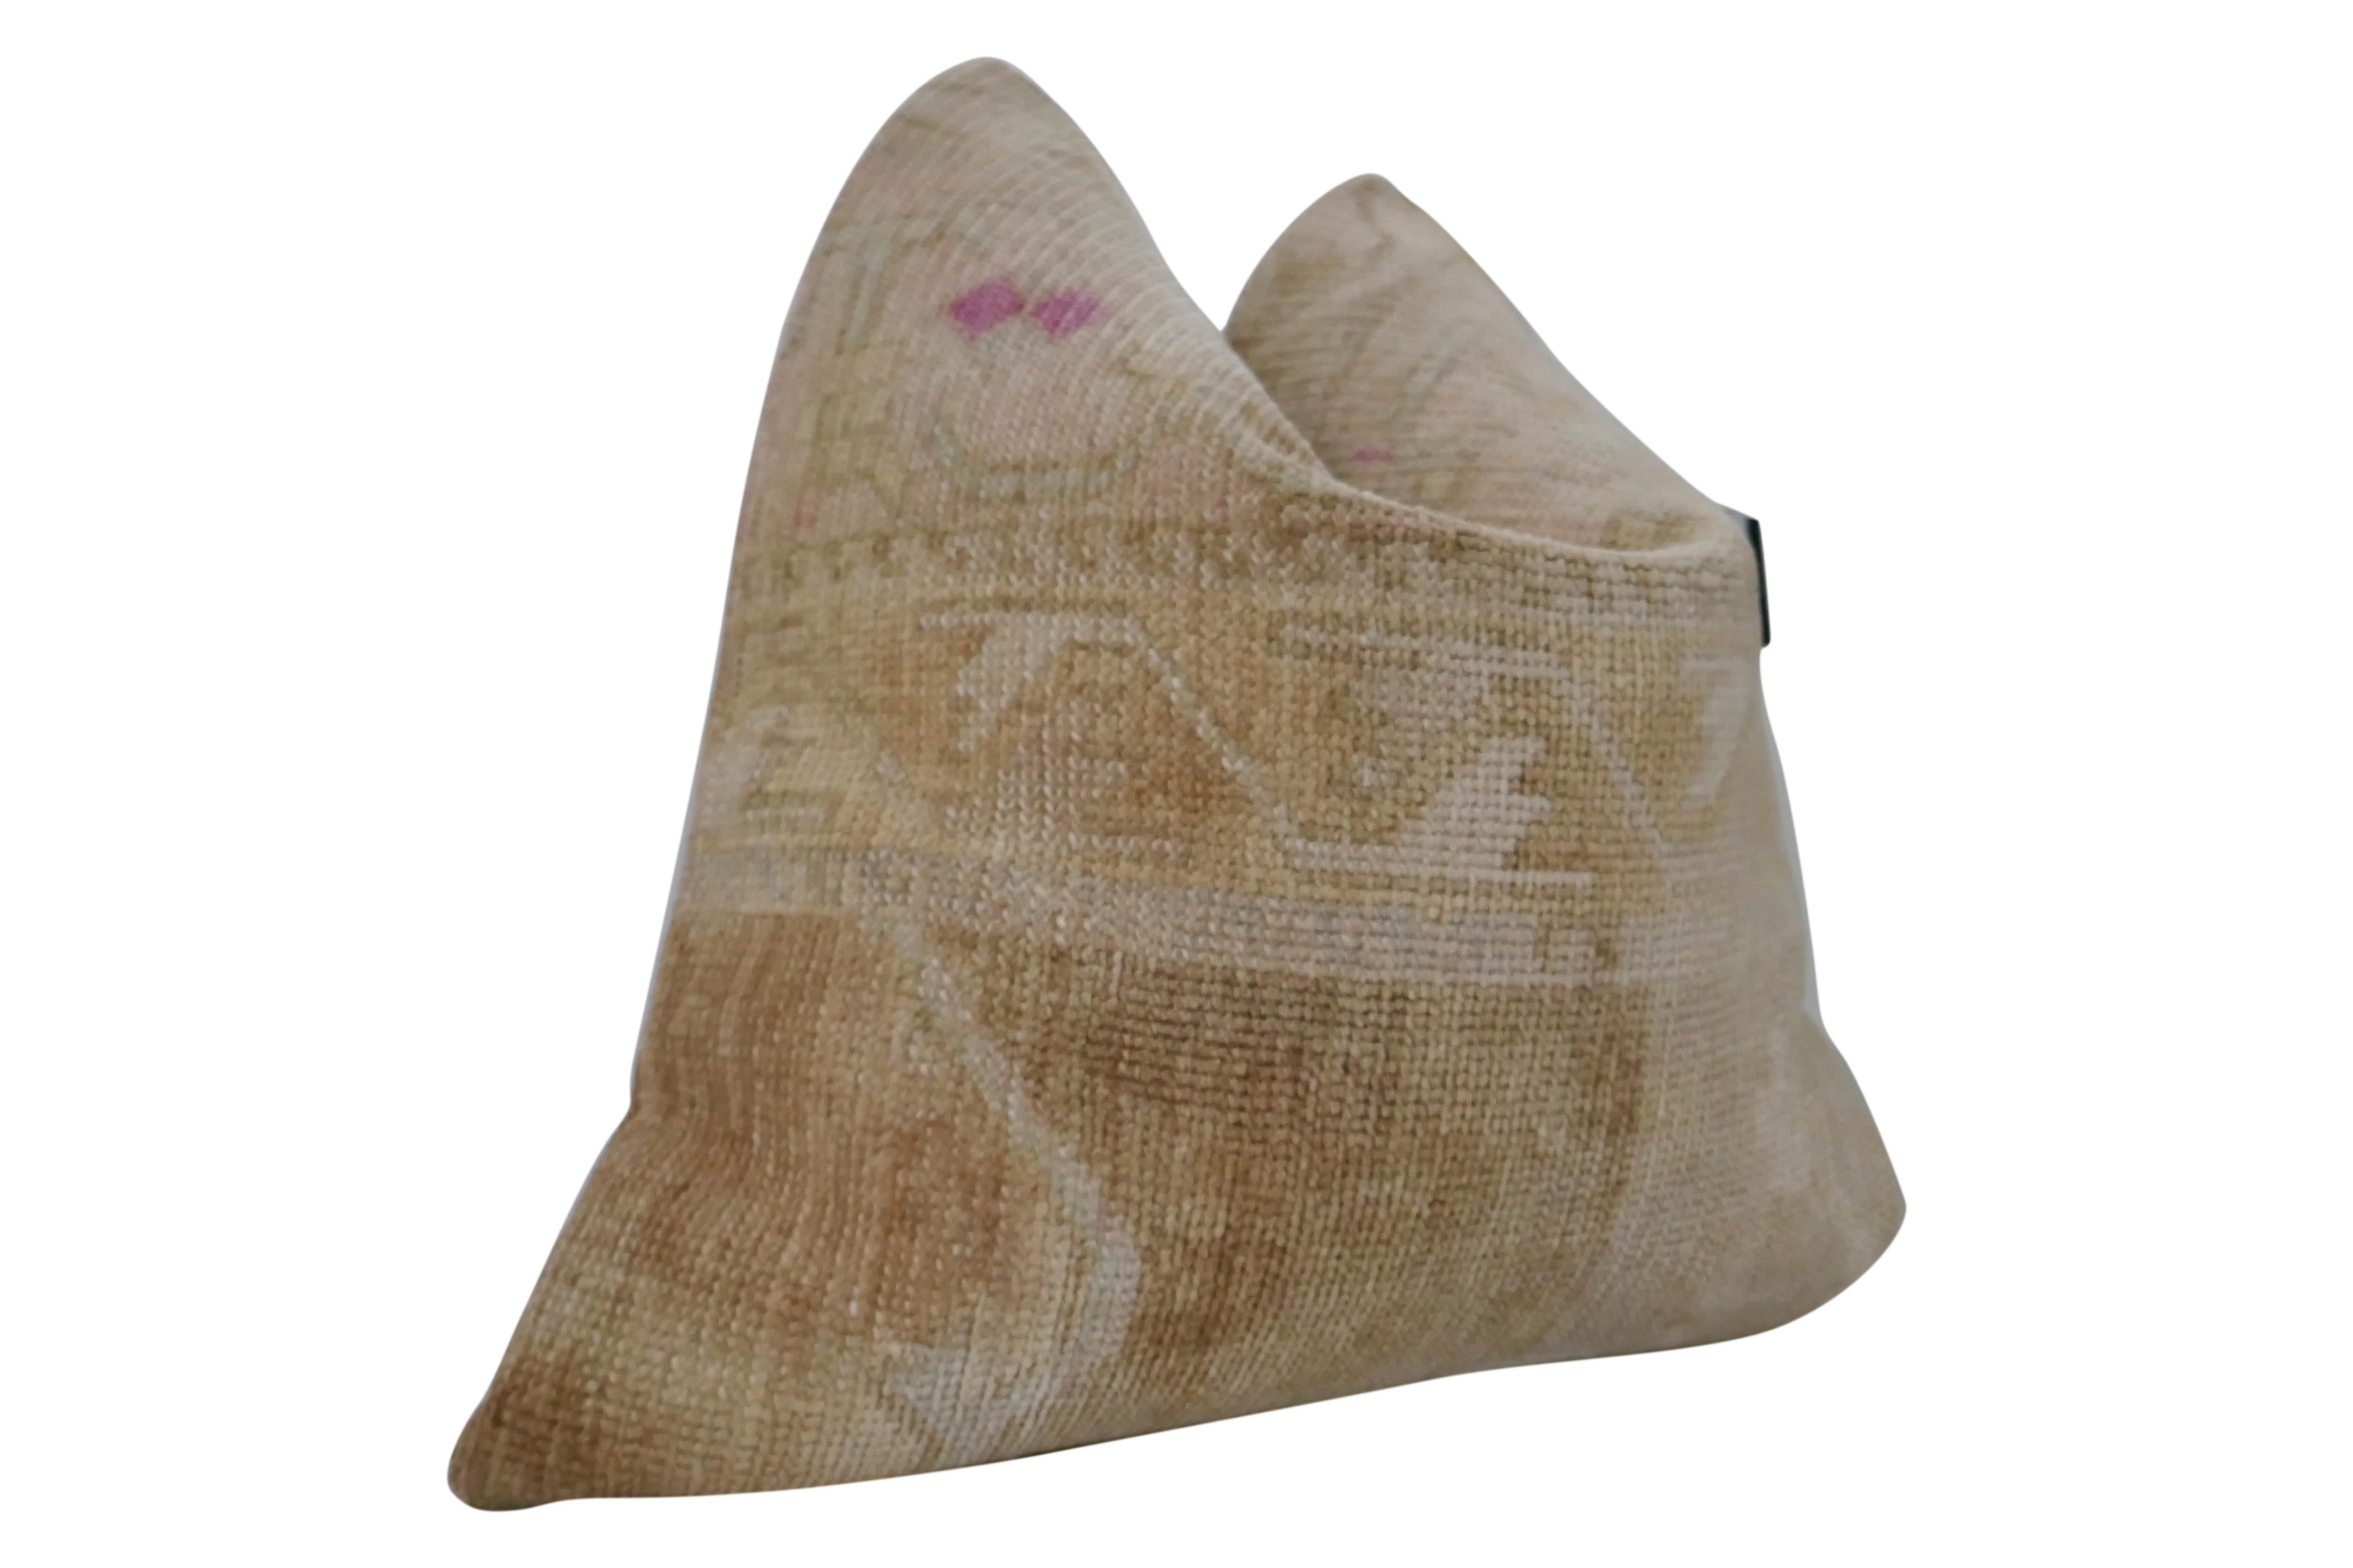 Fragments Identity authentischen Jahrgang anatolischen Kilim Wolle großes Kissen. Wunderschöne Textilkunst, handgewebt aus reiner Wolle zu einem schwer strukturierten, kompliziert gemusterten Motiv, das erstaunliche Farbtöne und Texturen erzeugt.